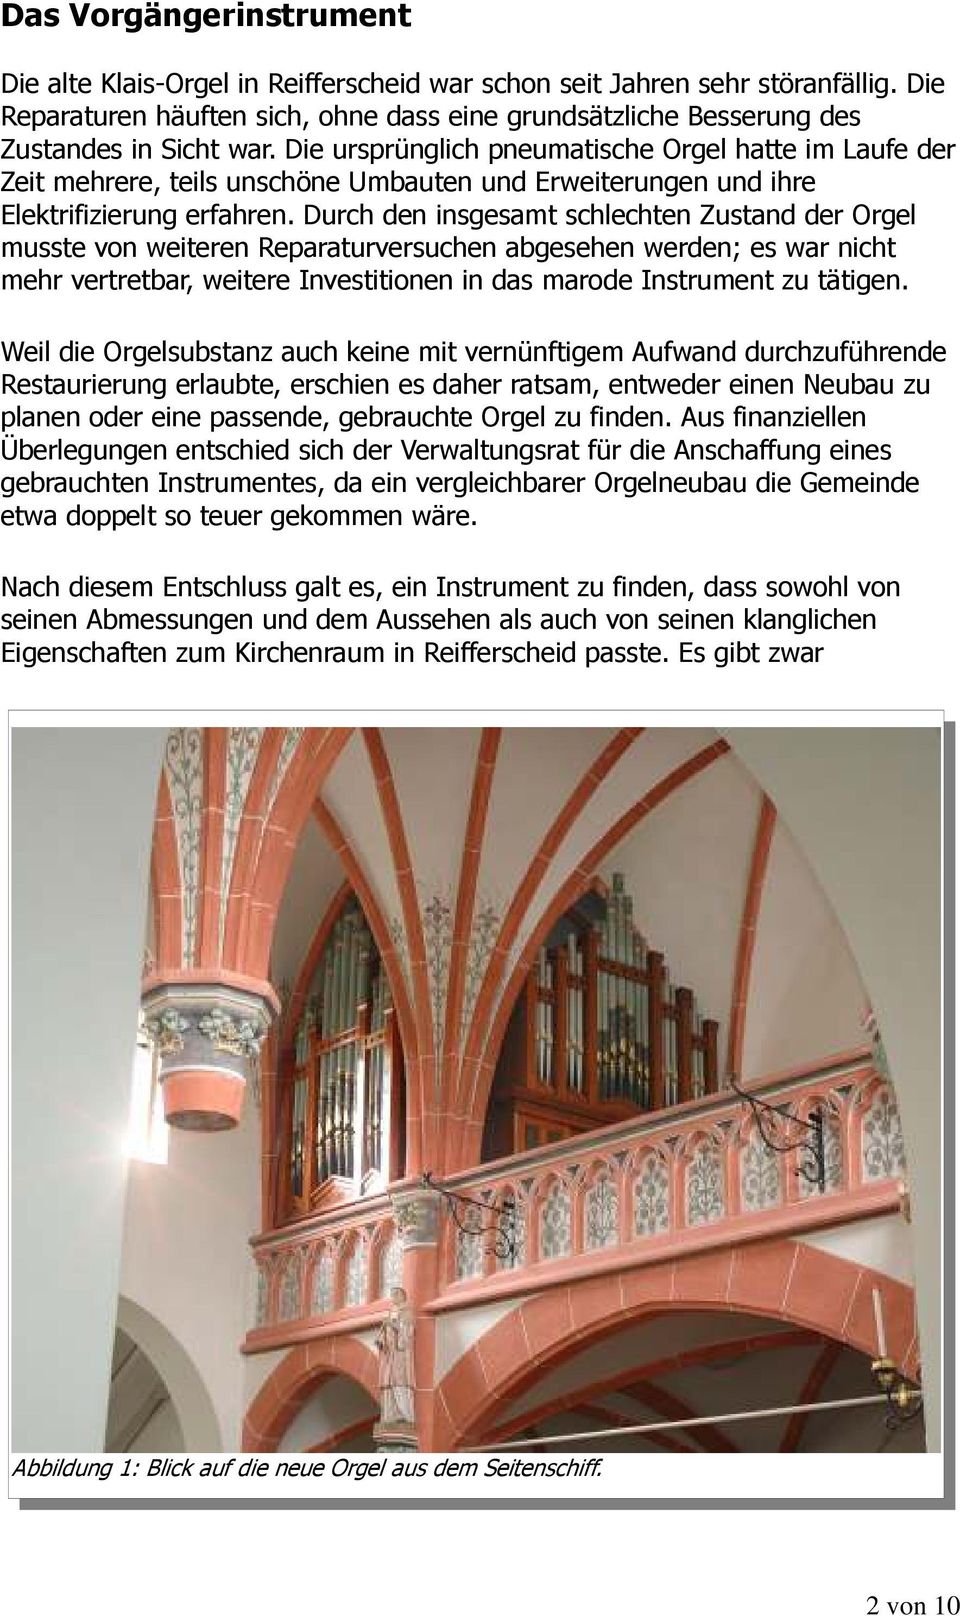 Durch den insgesamt schlechten Zustand der Orgel musste von weiteren Reparaturversuchen abgesehen werden; es war nicht mehr vertretbar, weitere Investitionen in das marode Instrument zu tätigen.